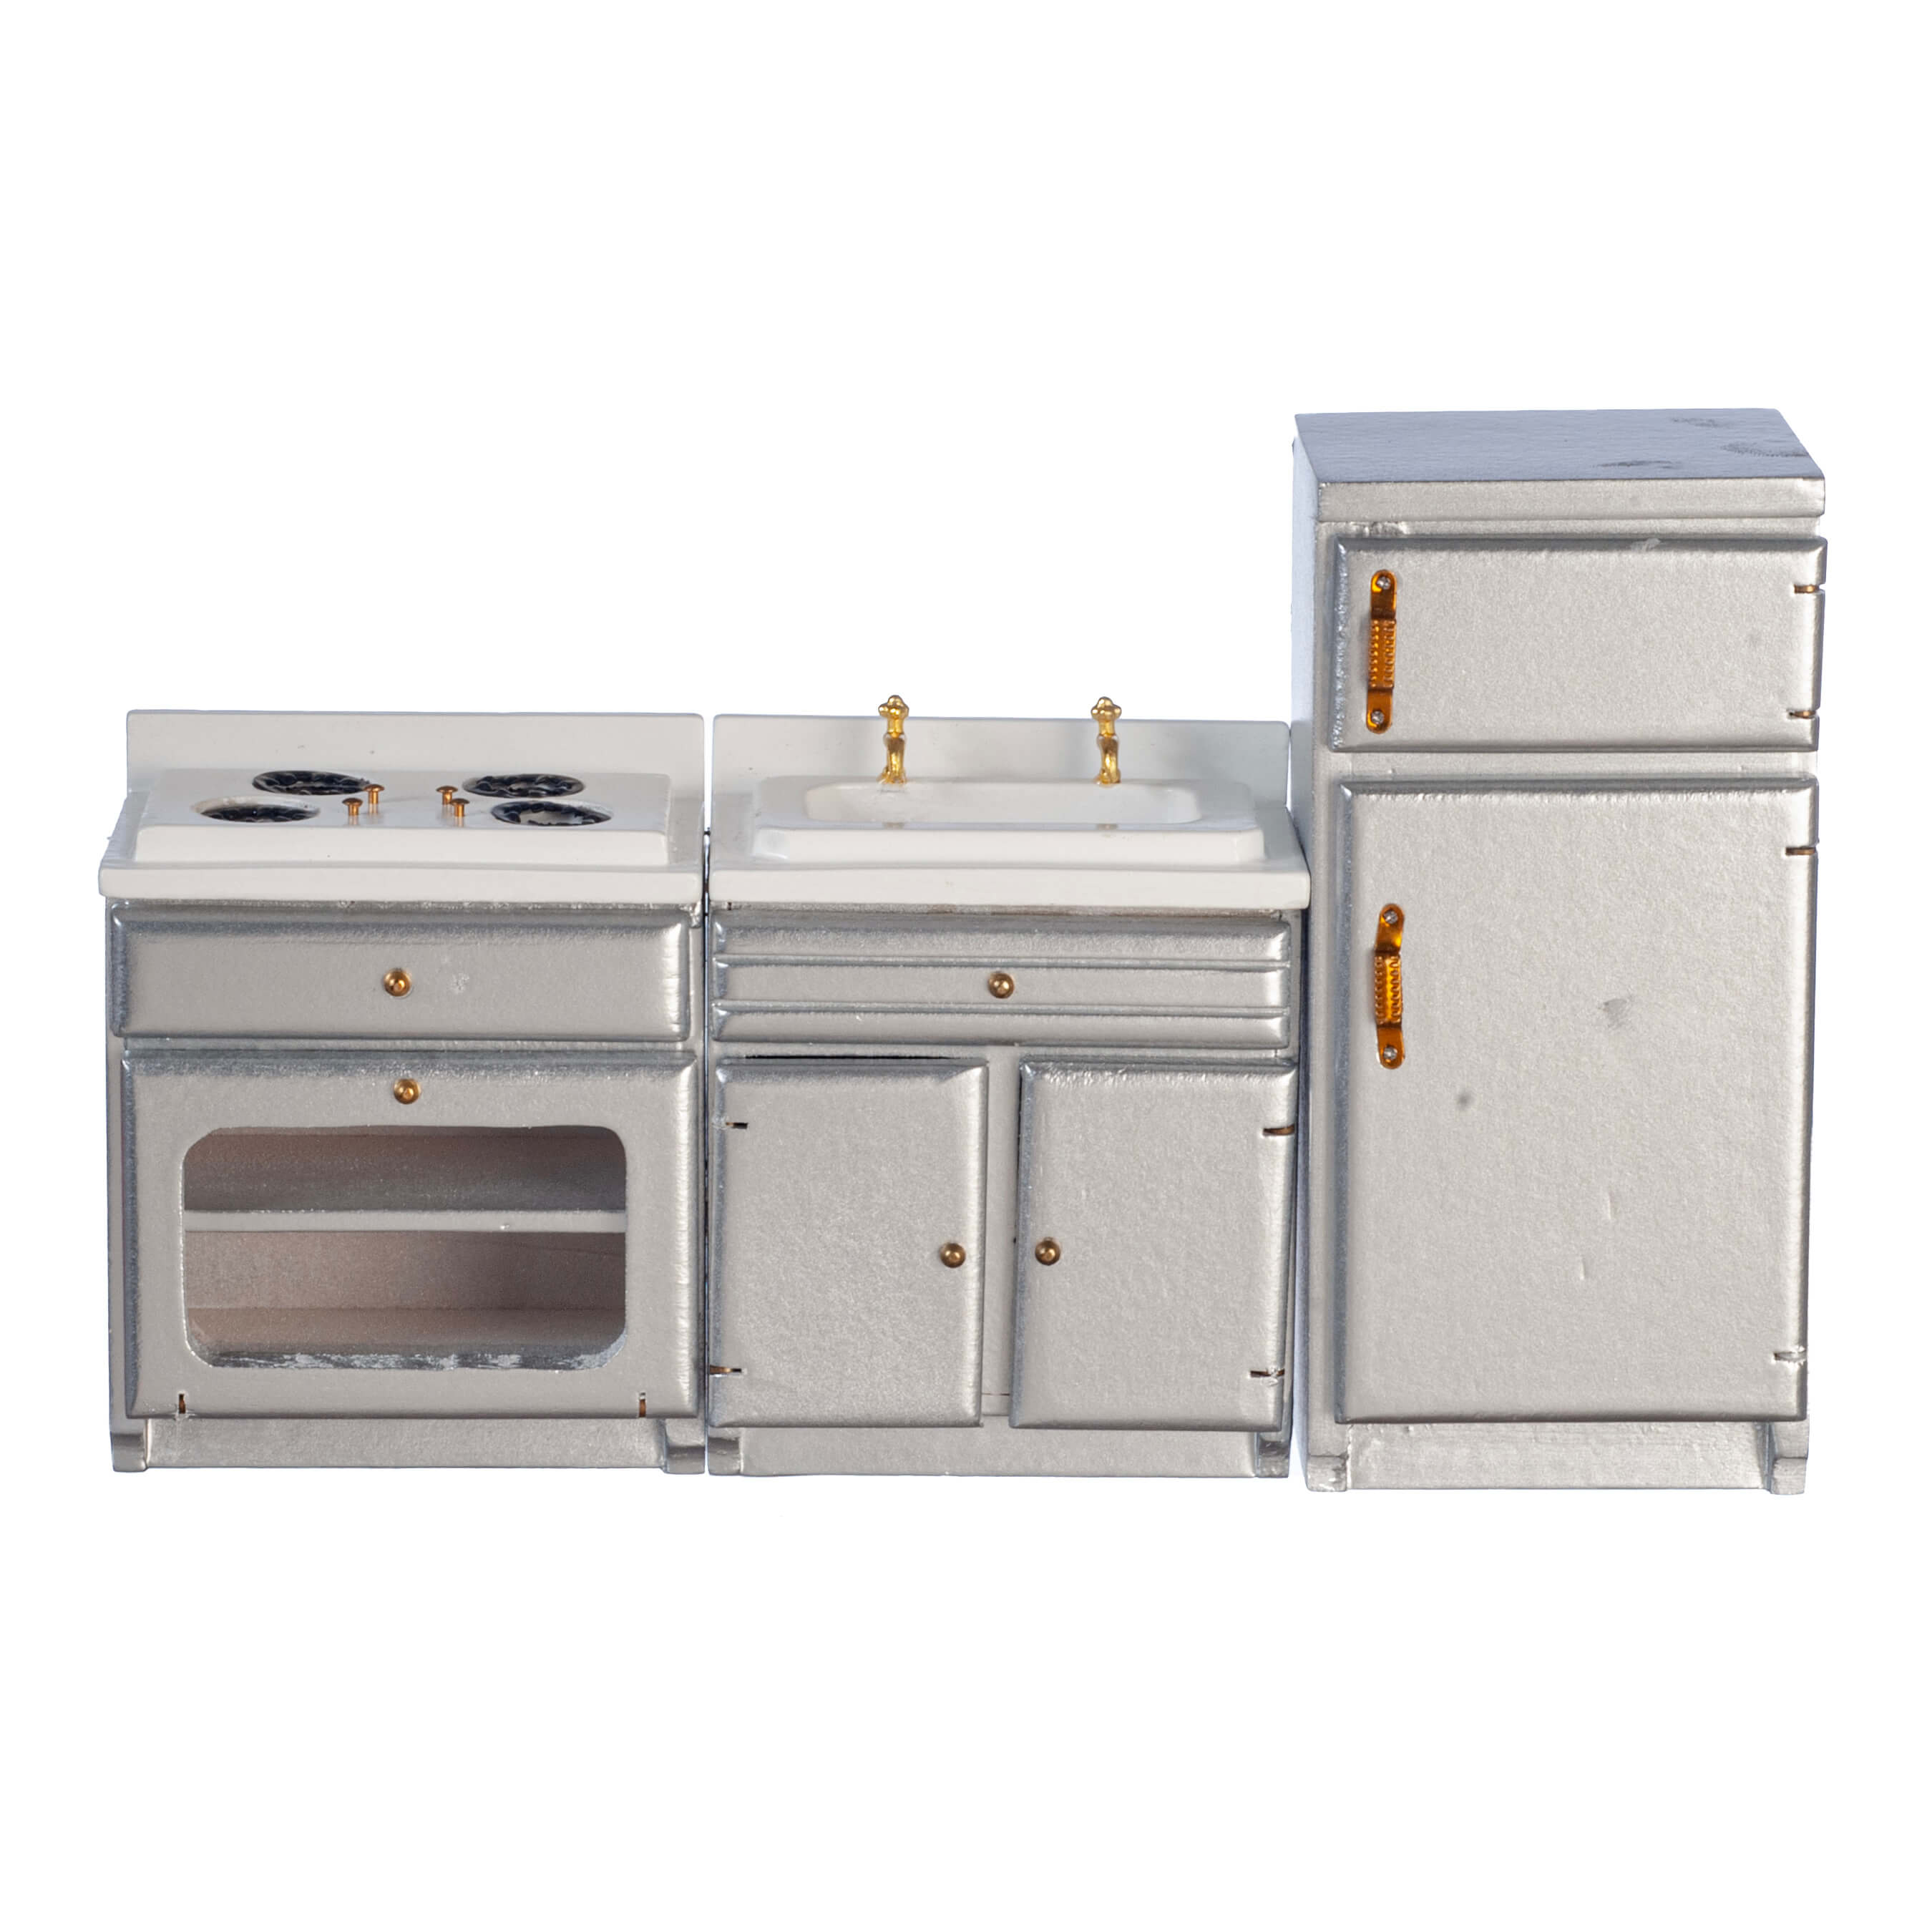 Kitchen Appliance Set - Silver - 3pc